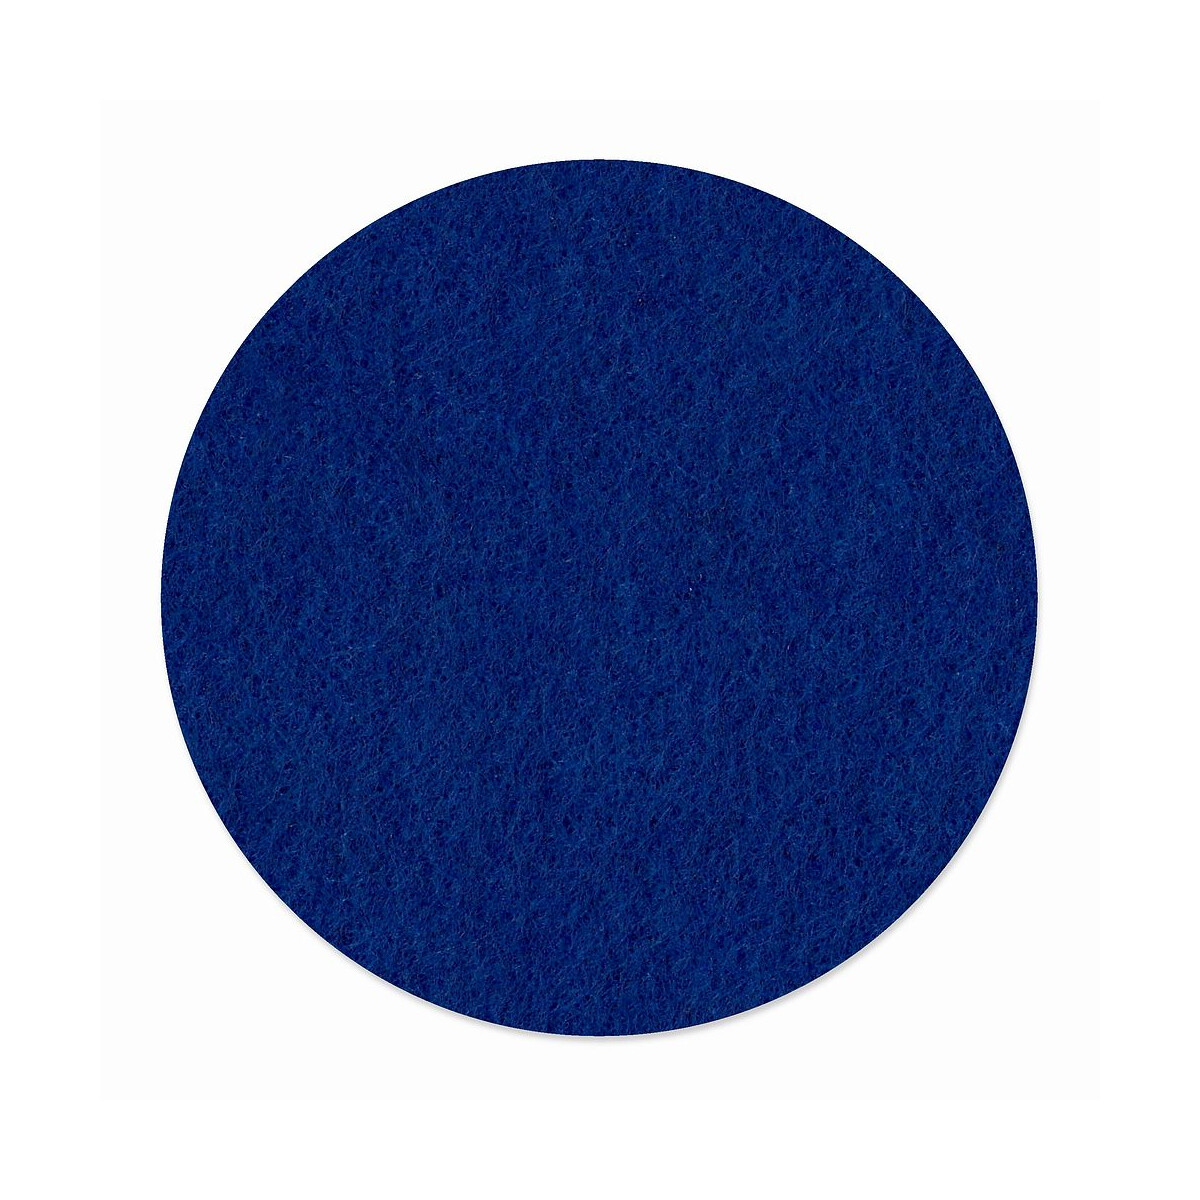 1 x FILZ Untersetzer Rund 11 cm - dunkelblau